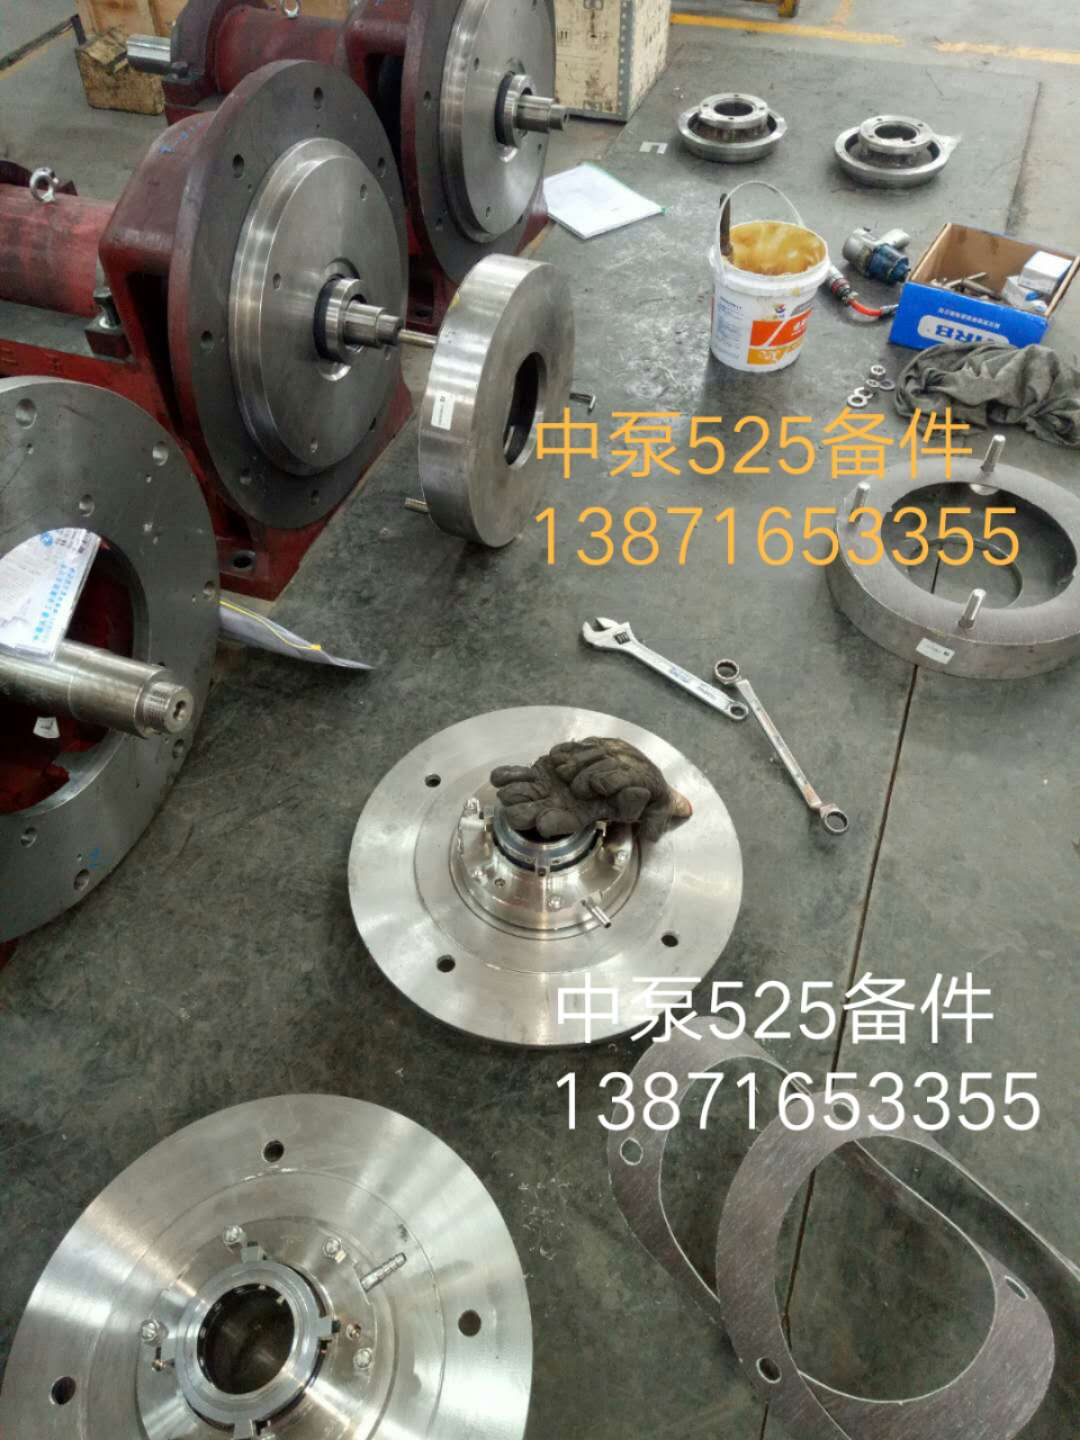 襄樊LCF125/405I泵壳厂家批发报价电话 样式美观